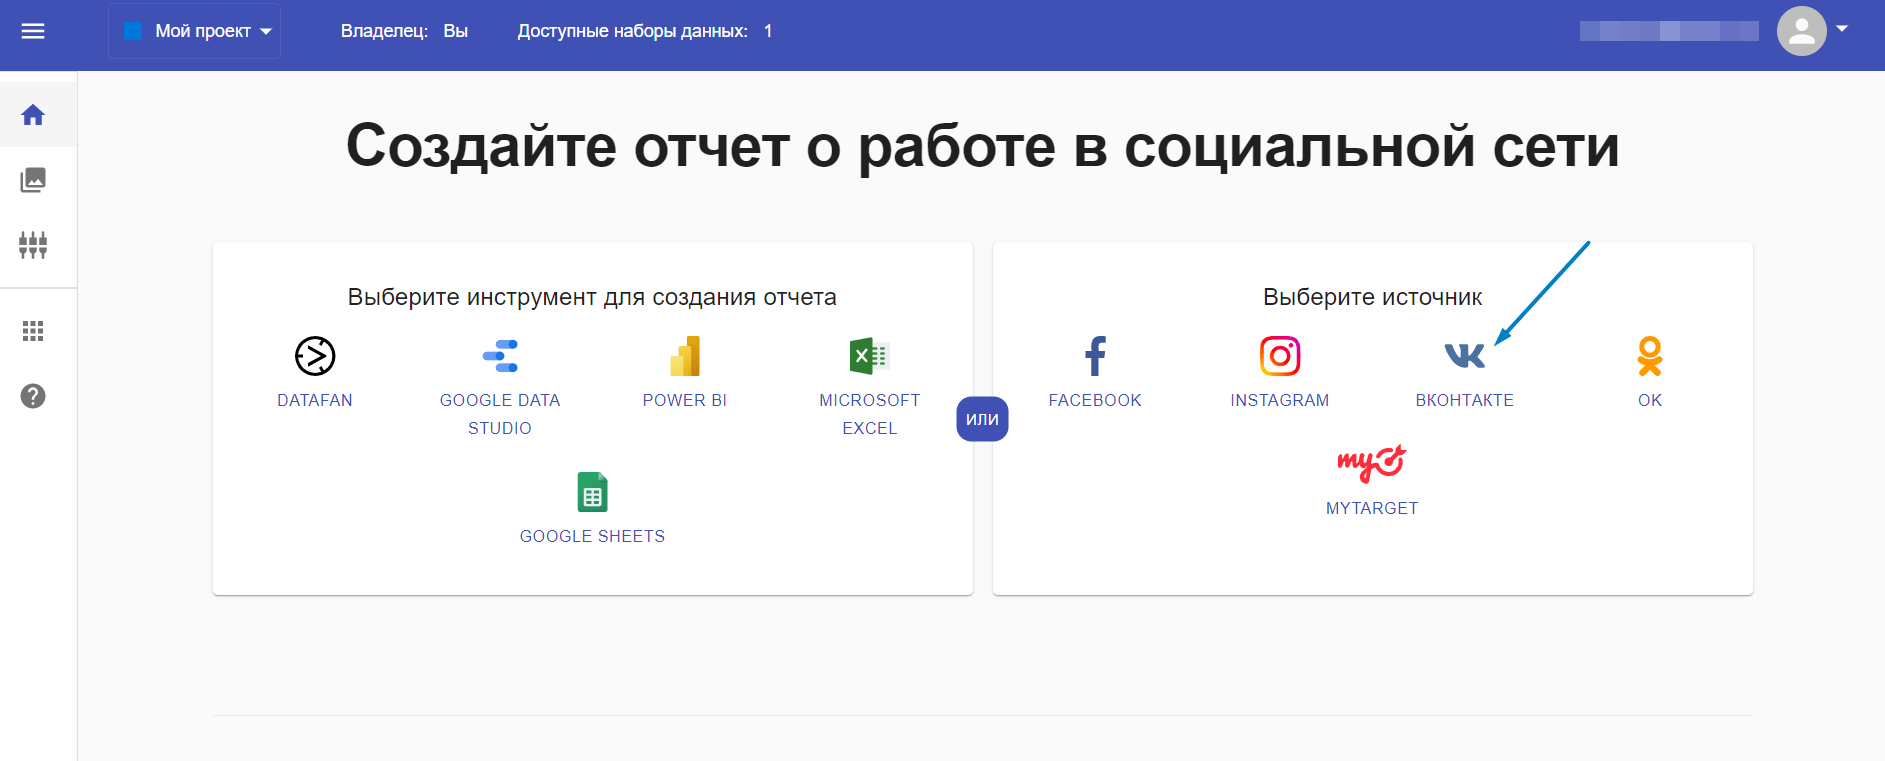 У нас — ВКонтакте